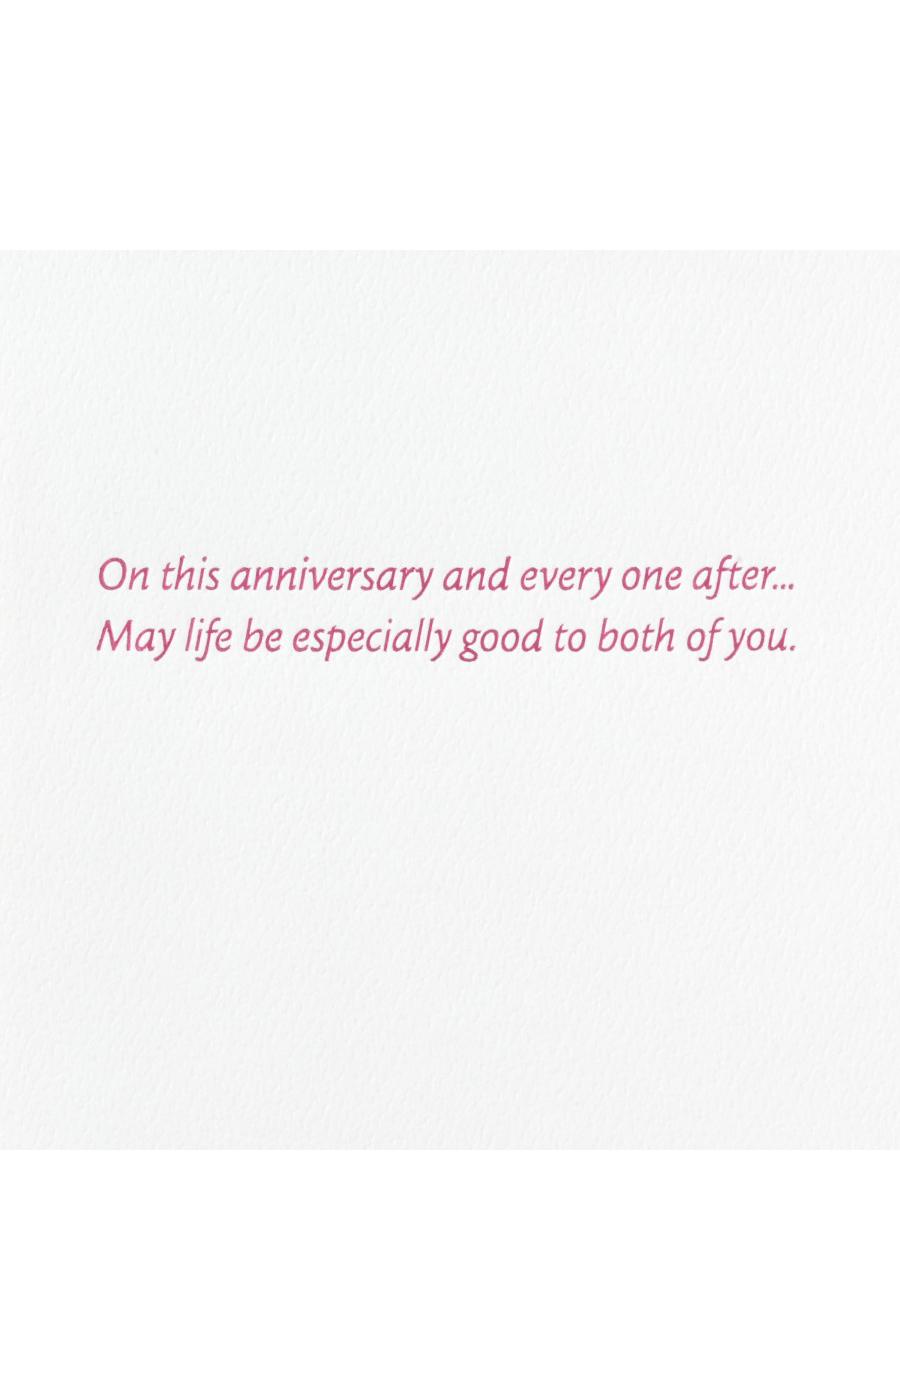 Hallmark Signature Happy Anniversary Card for Couple - E23, E15; image 3 of 6